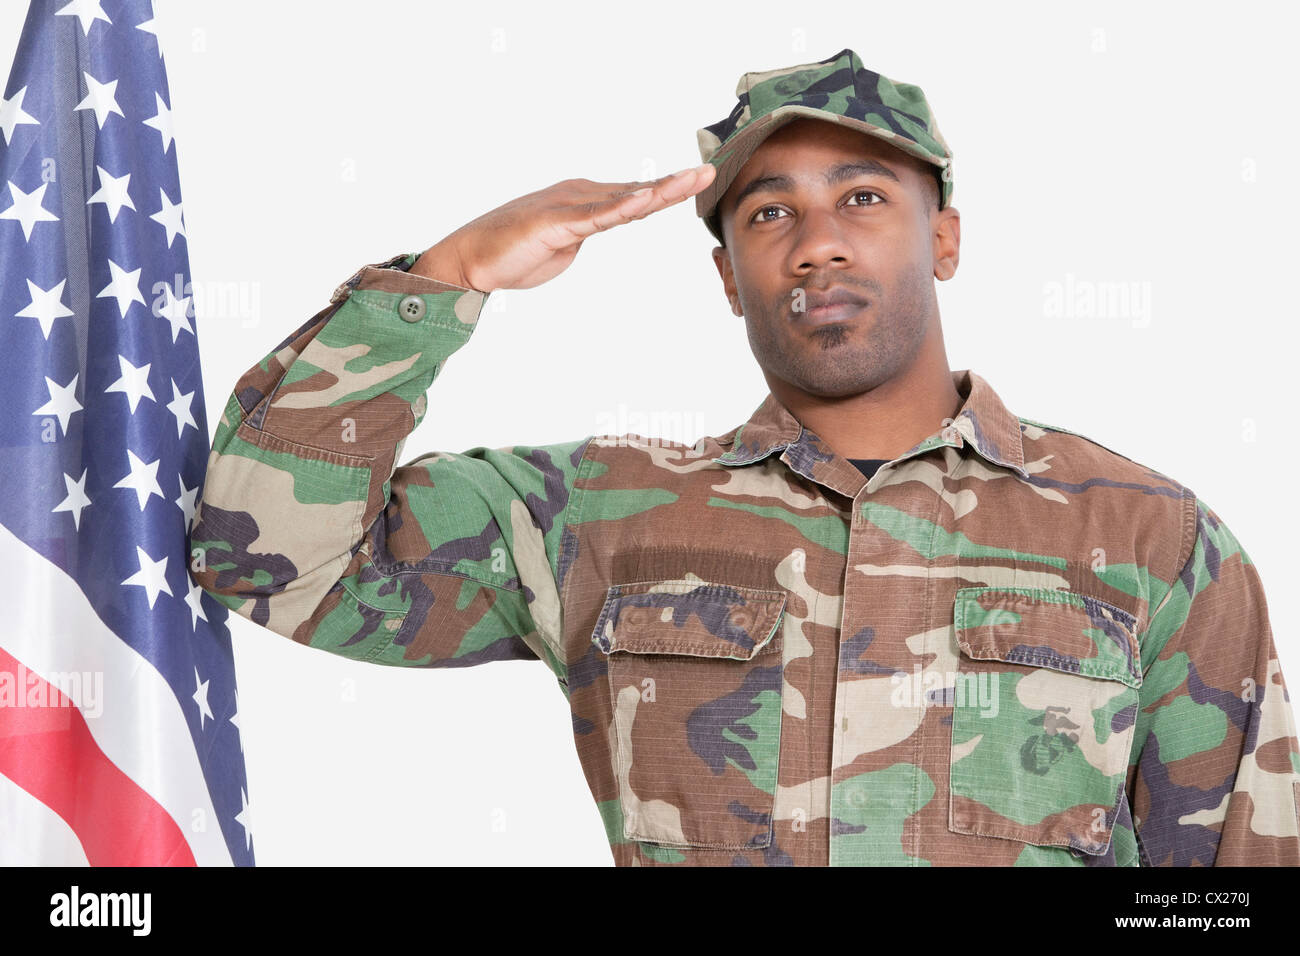 Portrait de l'US Marine Corps soldier saluting drapeau américain sur fond gris Banque D'Images